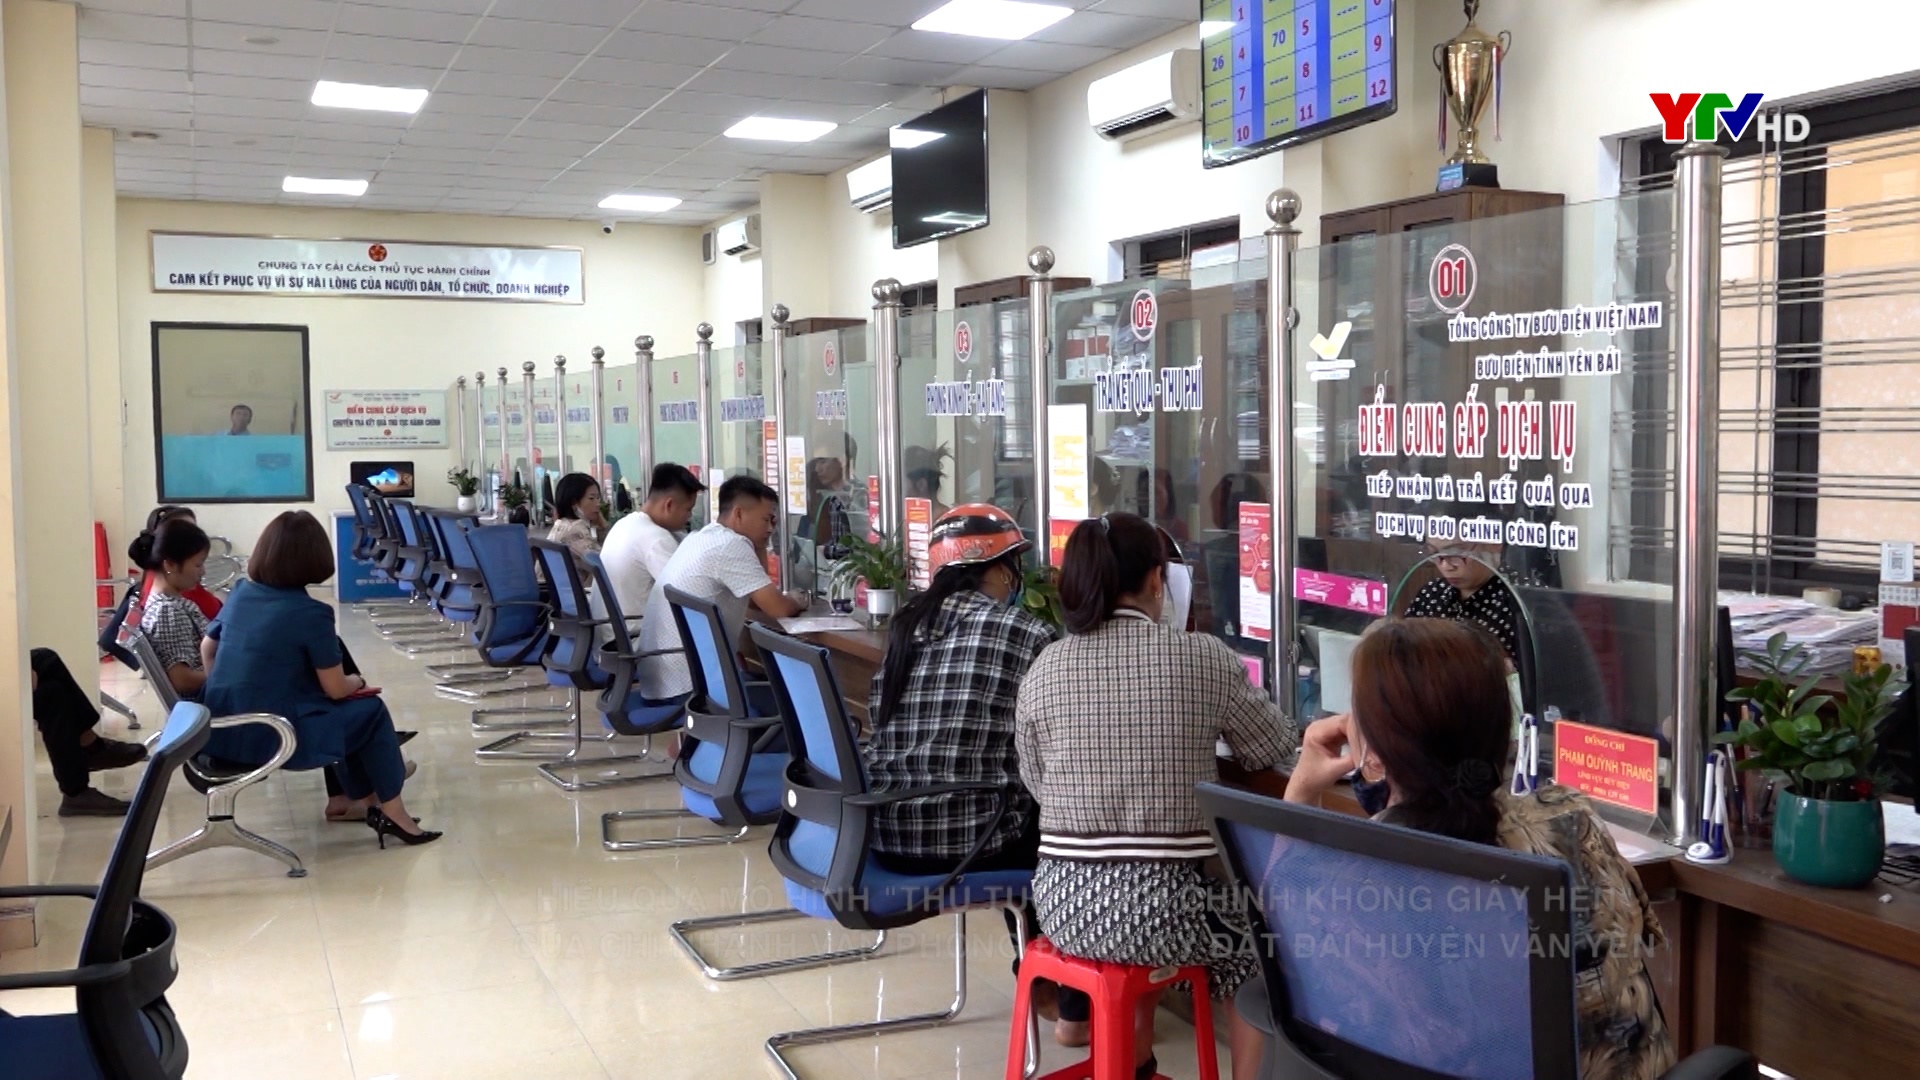 Hiệu quả mô hình "Thủ tục hành chính không giấy hẹn" tại Chi nhánh văn phòng đăng ký đất đai huyện Văn Yên